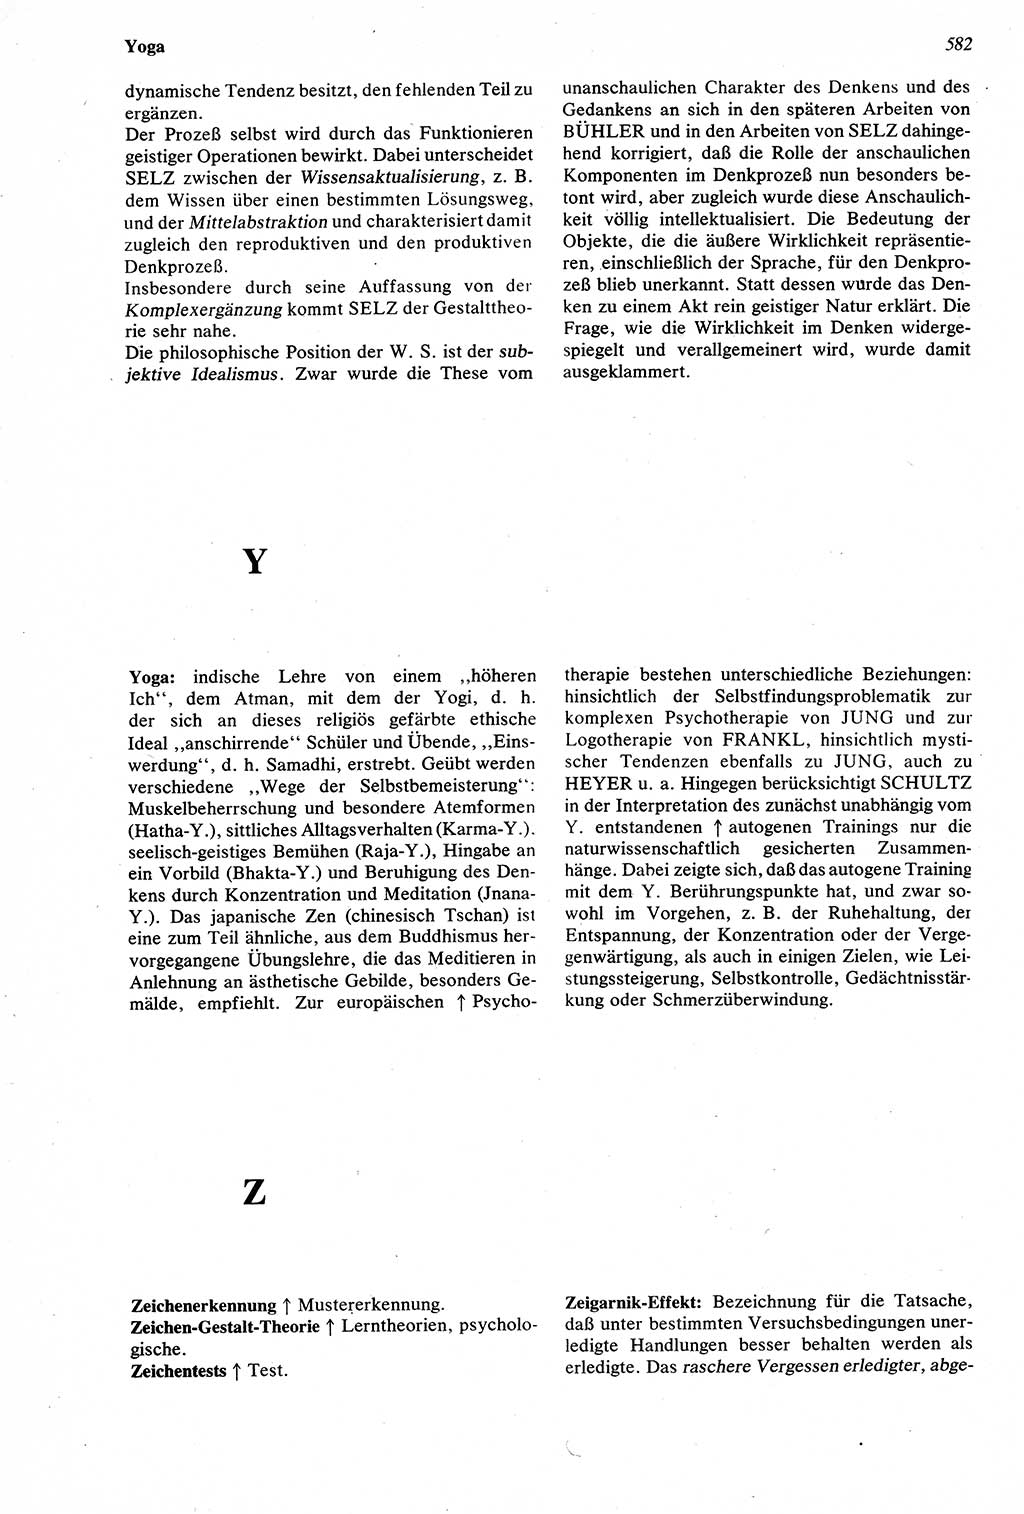 Wörterbuch der Psychologie [Deutsche Demokratische Republik (DDR)] 1976, Seite 582 (Wb. Psych. DDR 1976, S. 582)